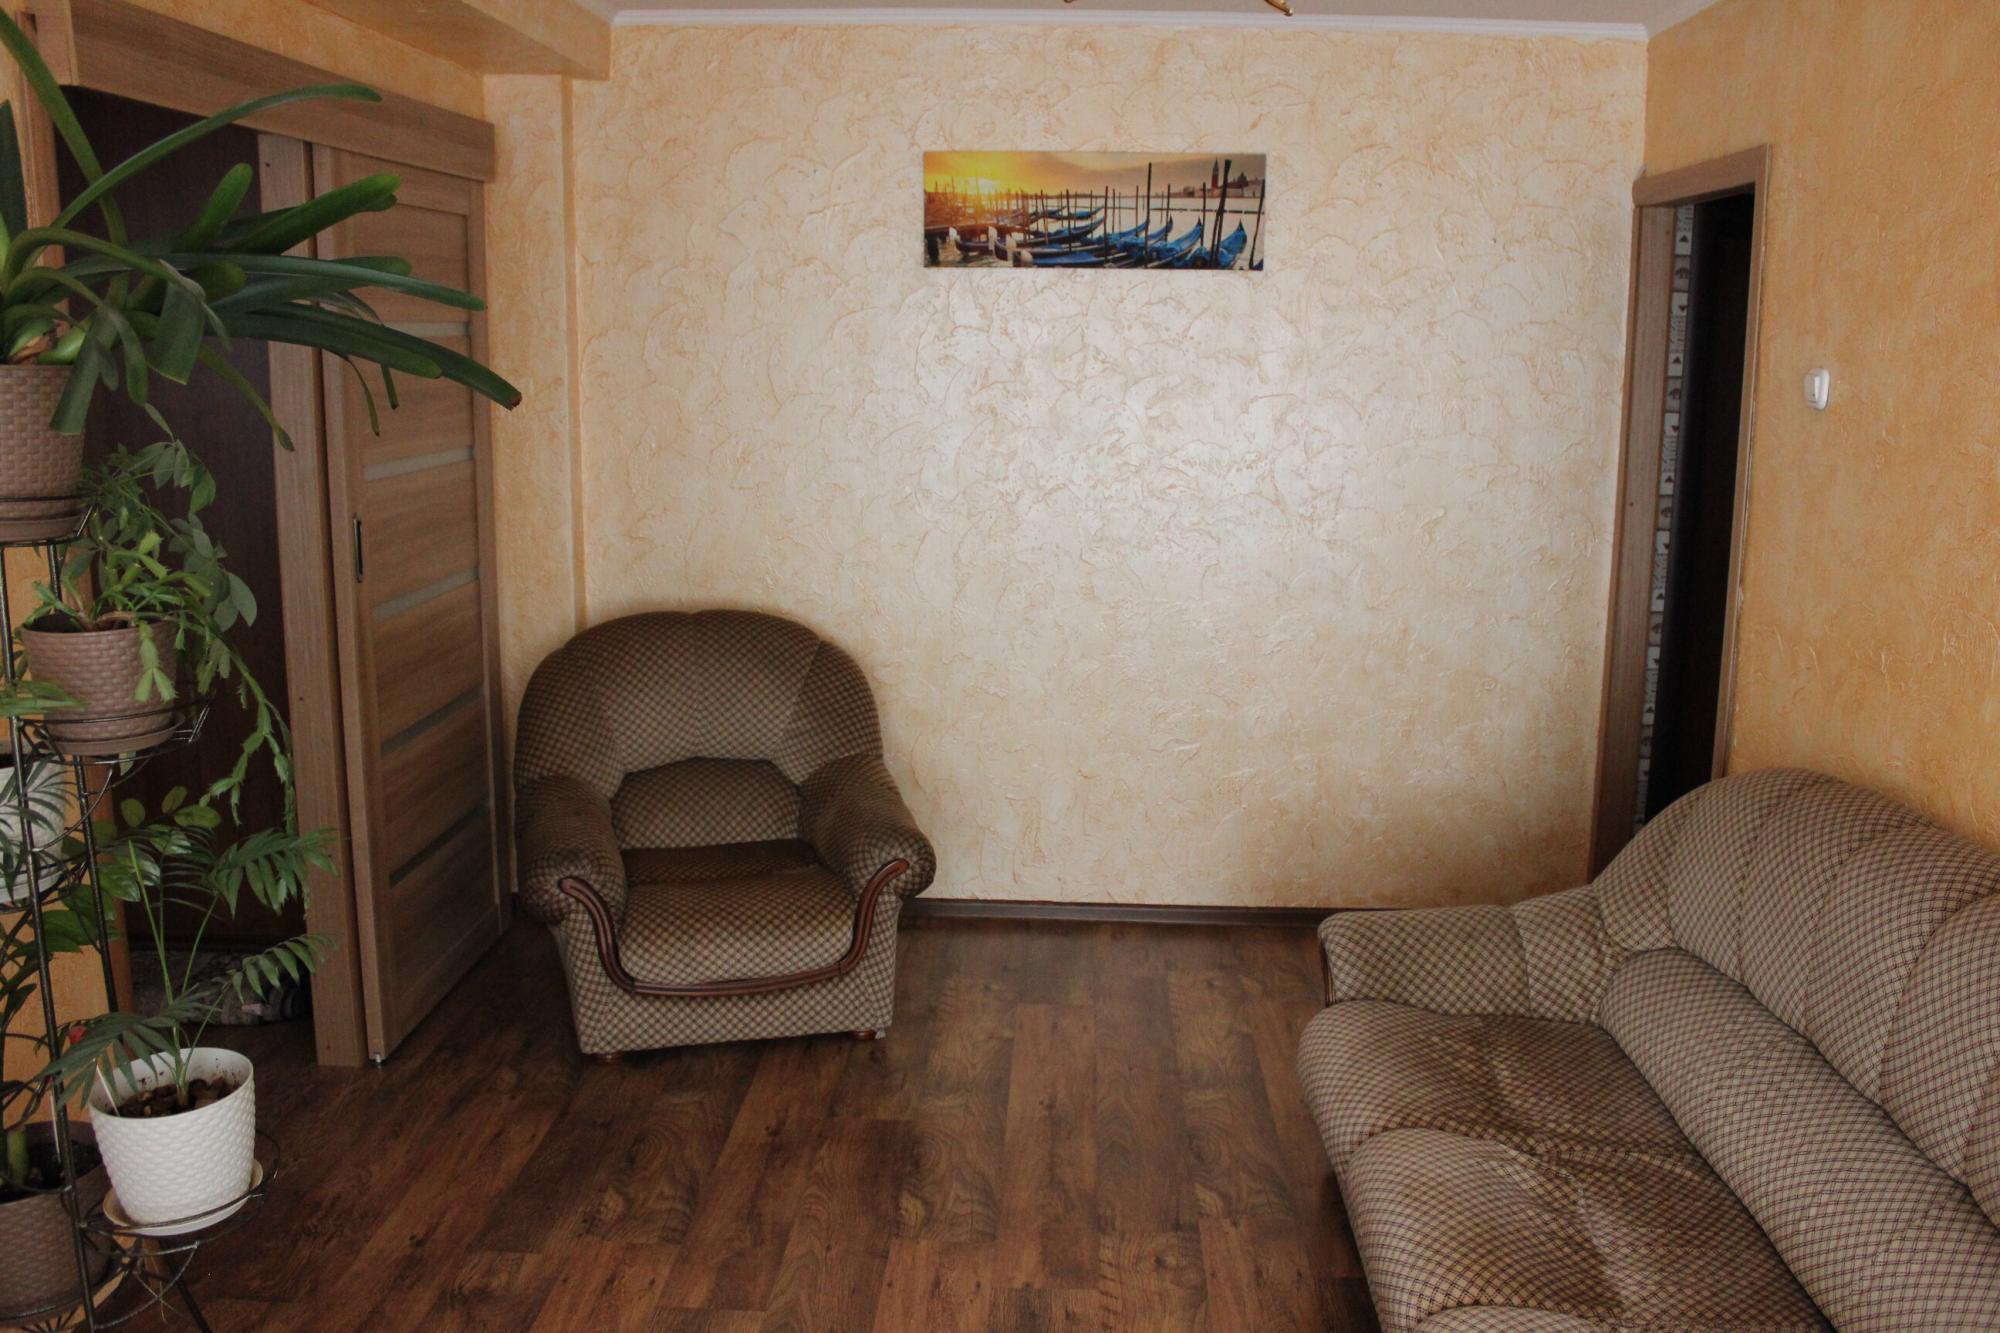 Аренда квартир красноярск без посредников длительно. Красноярск ул железнодорожников 22 купить квартиру.